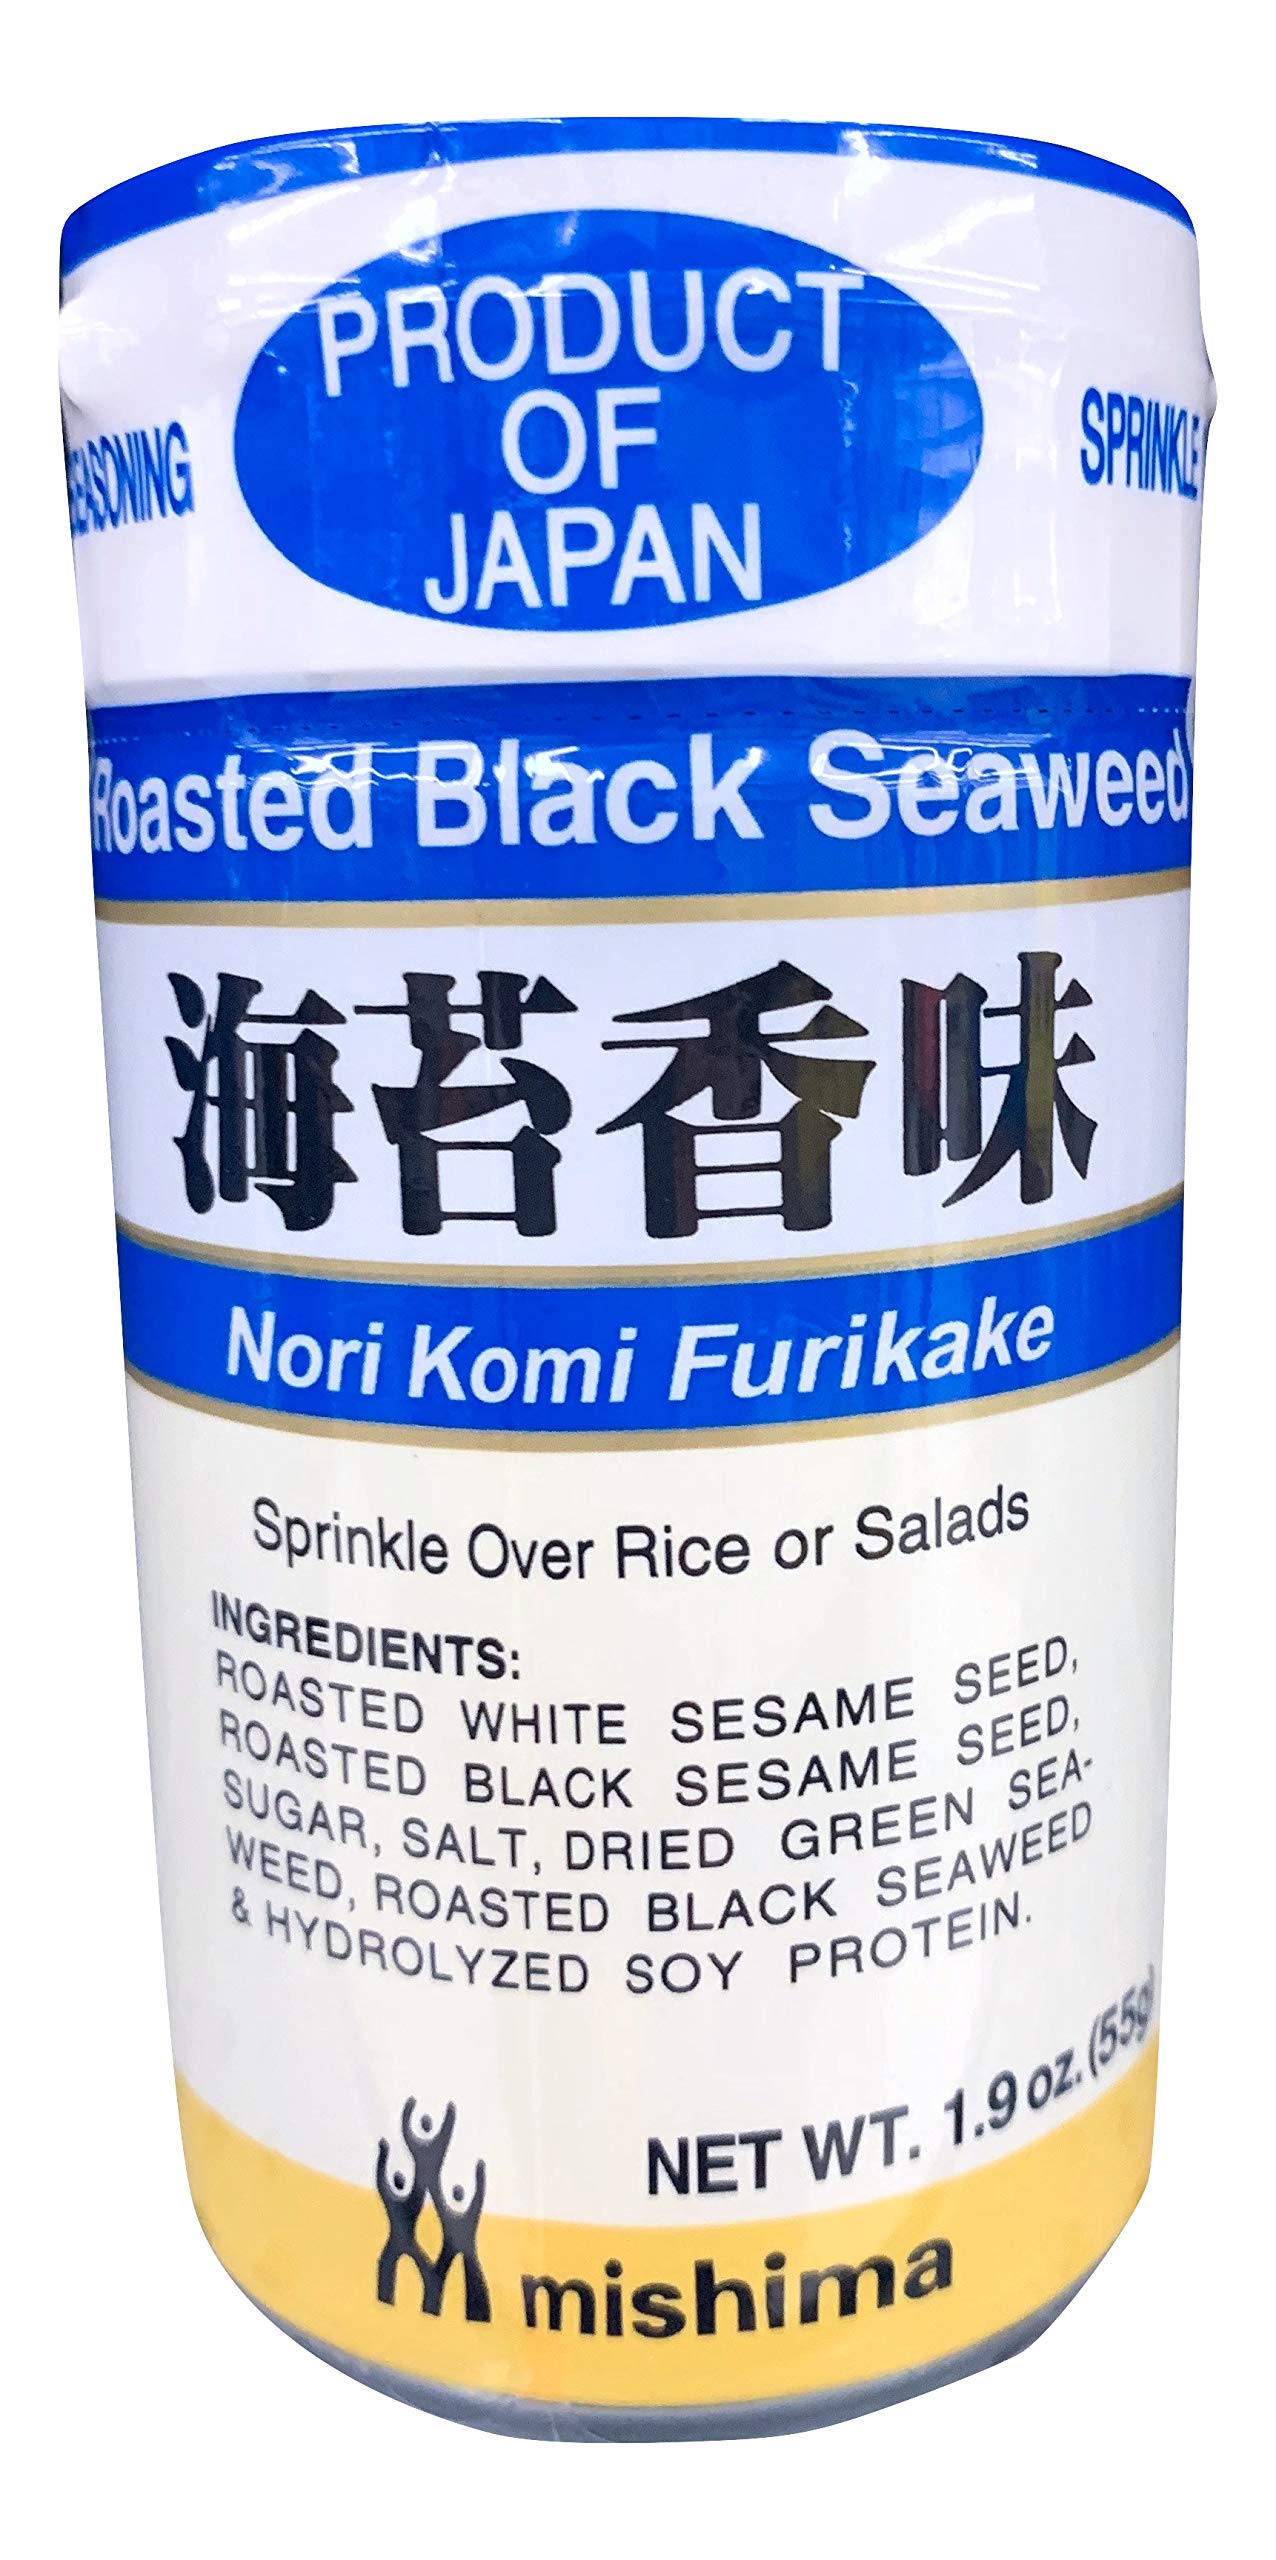 Nori Komi Furikake - Roasted Black Seaweed